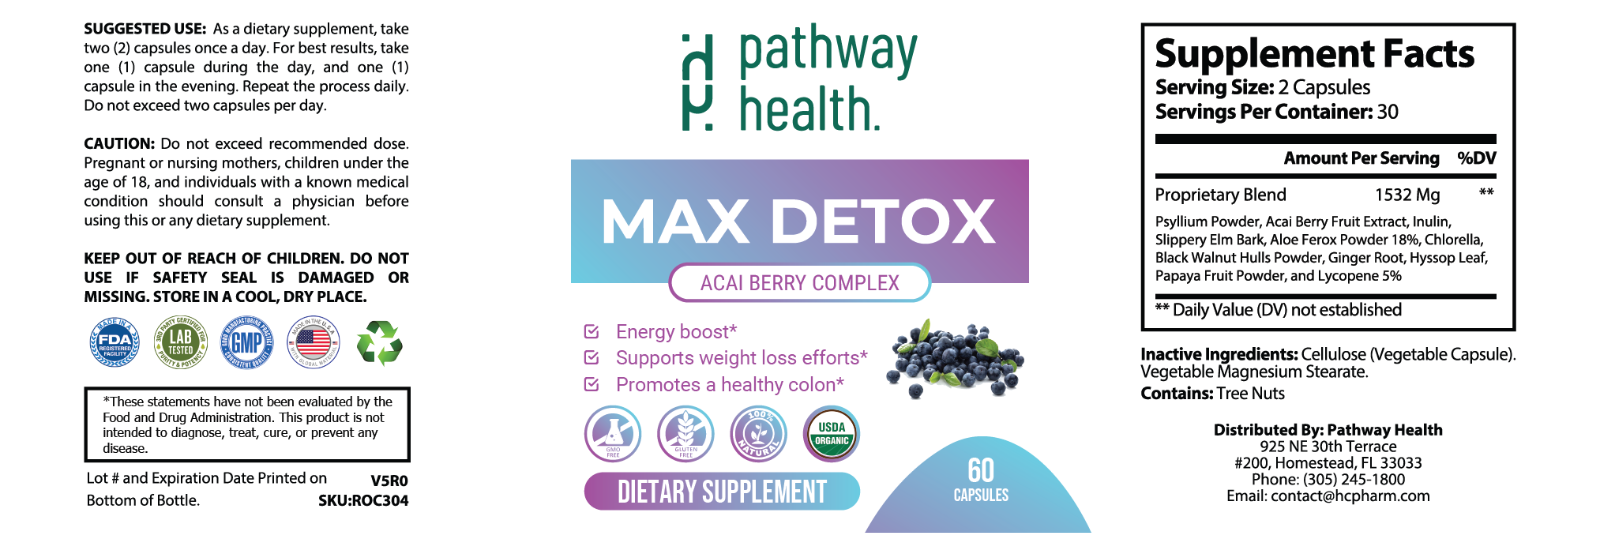 Max Detox - Promote Health Colon